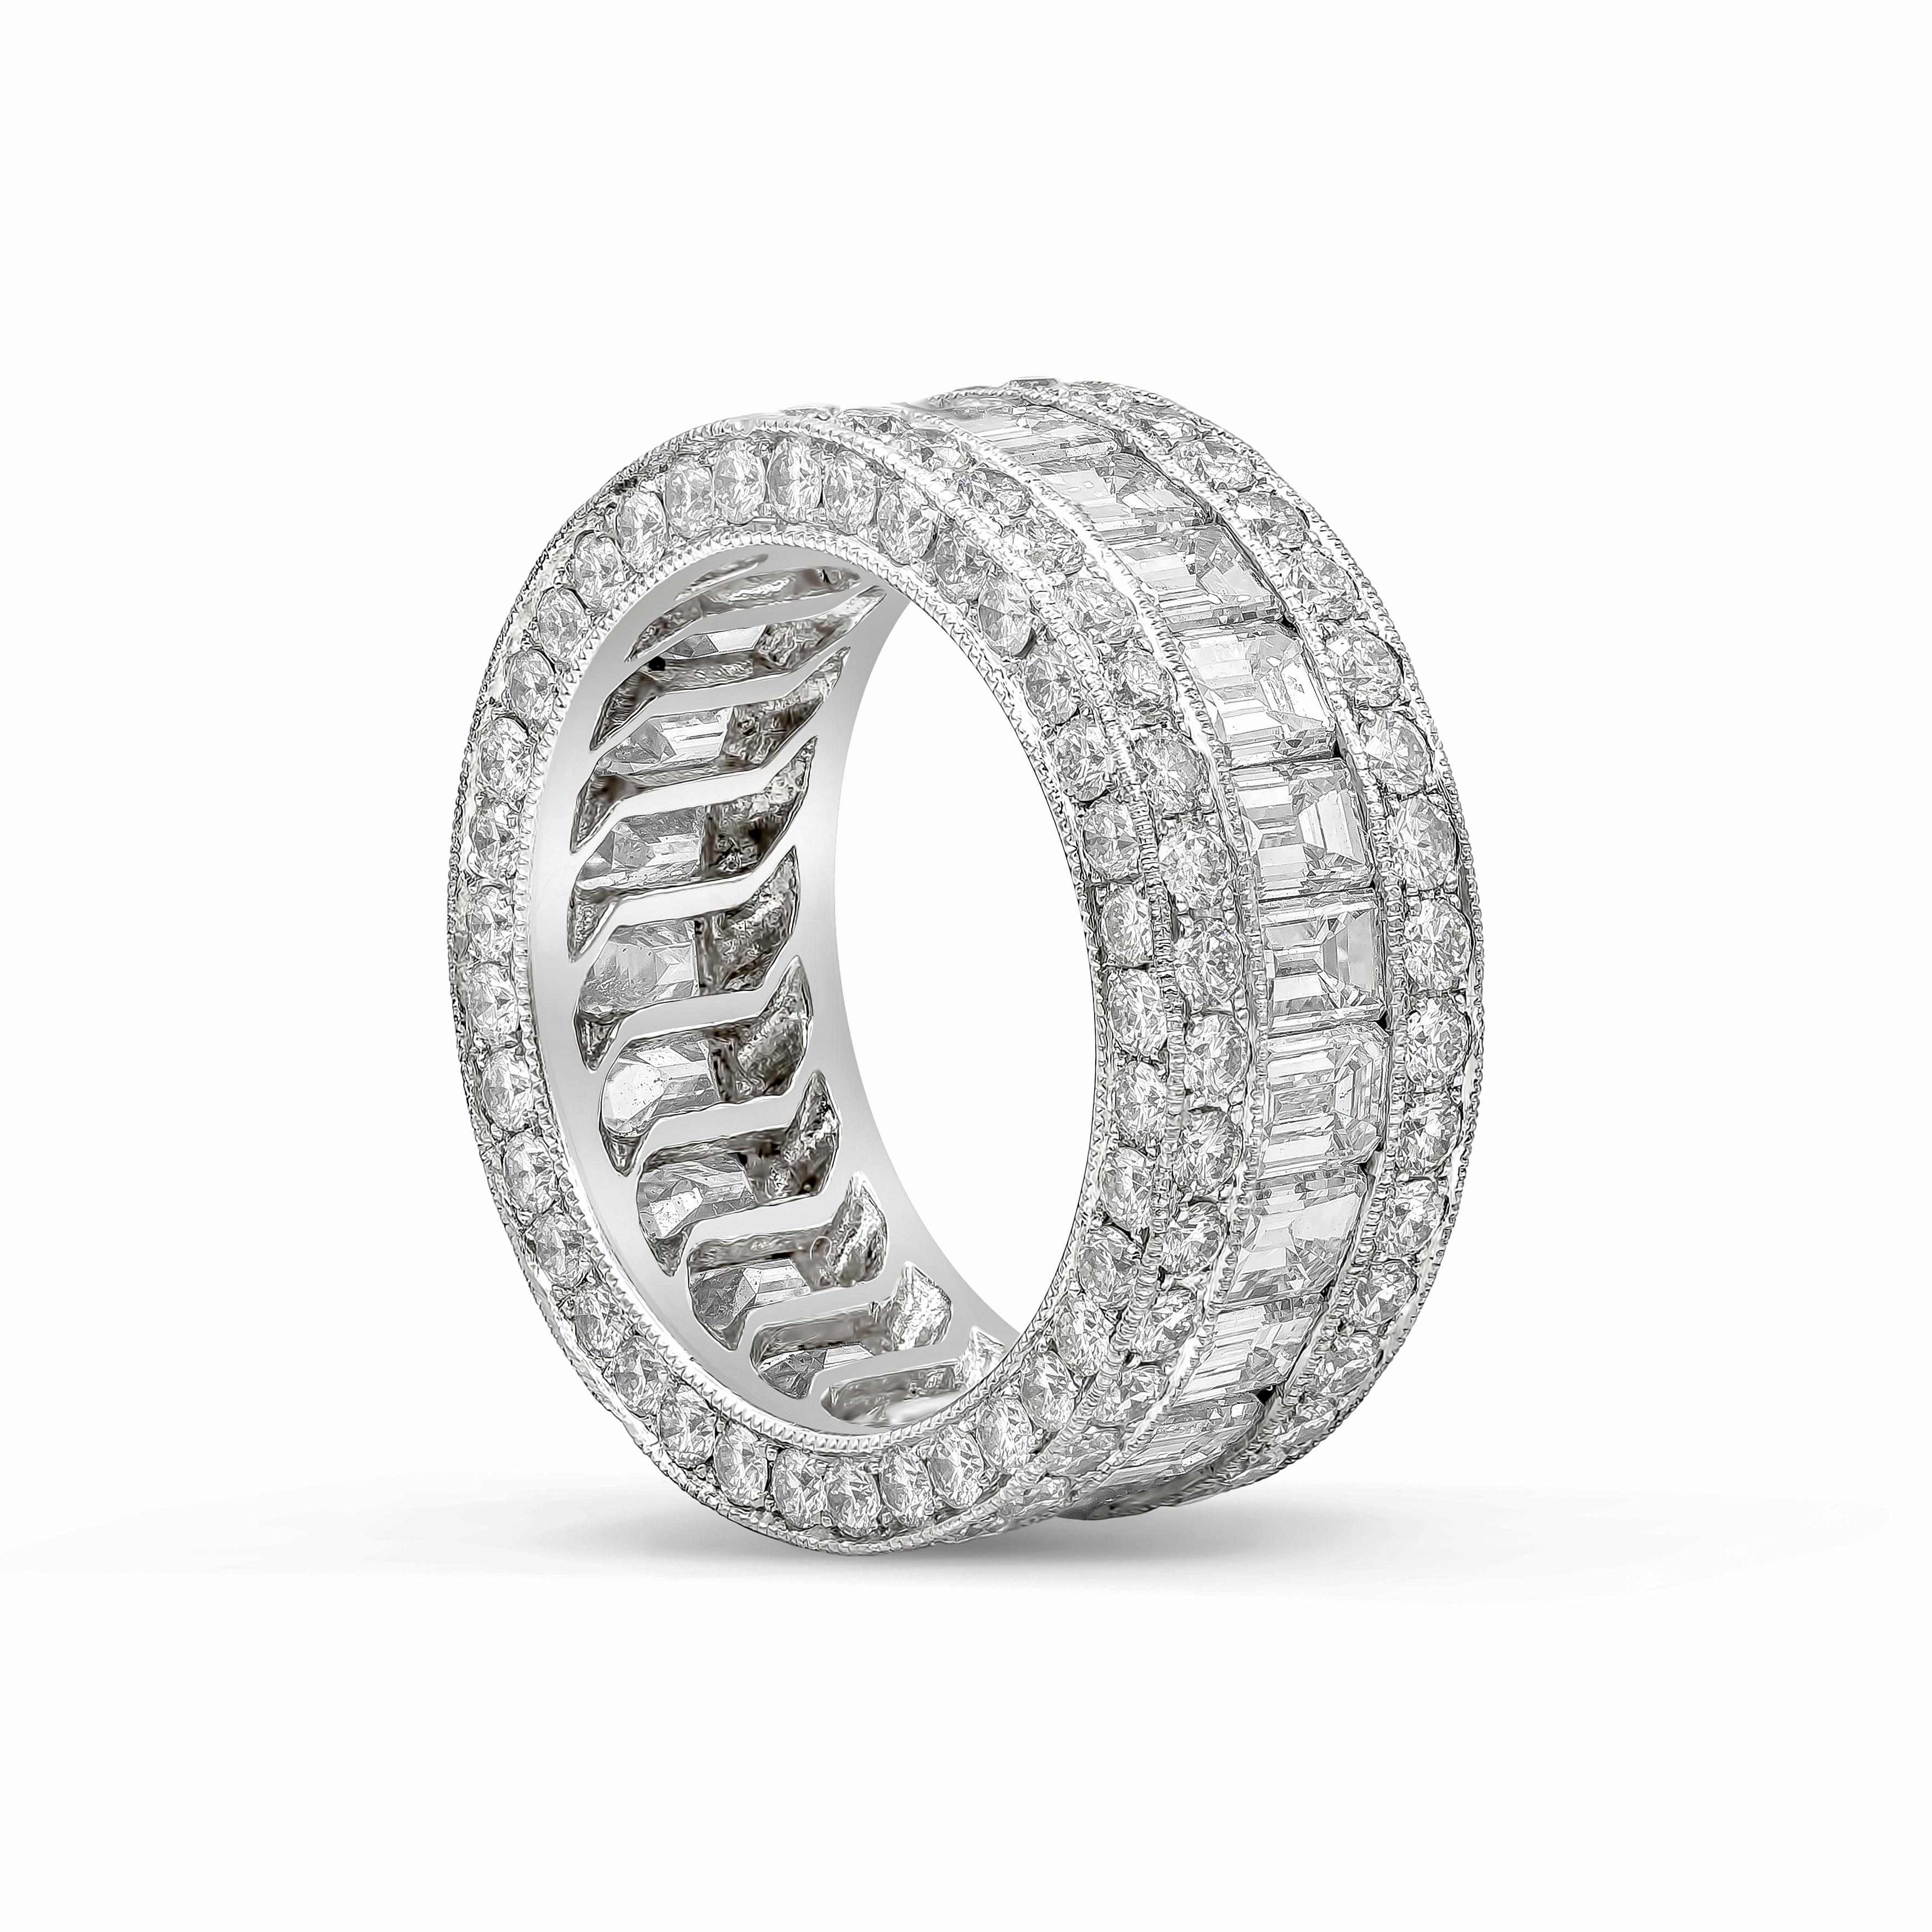 Dieser elegante Ehering präsentiert Diamanten im Smaragdschliff mit einem Gesamtgewicht von 3,85 Karat, eingefasst zwischen runden Brillanten mit einem Gesamtgewicht von 2,33 Karat. Hergestellt in Platin. Größe 5.75 US.

Roman Malakov ist ein